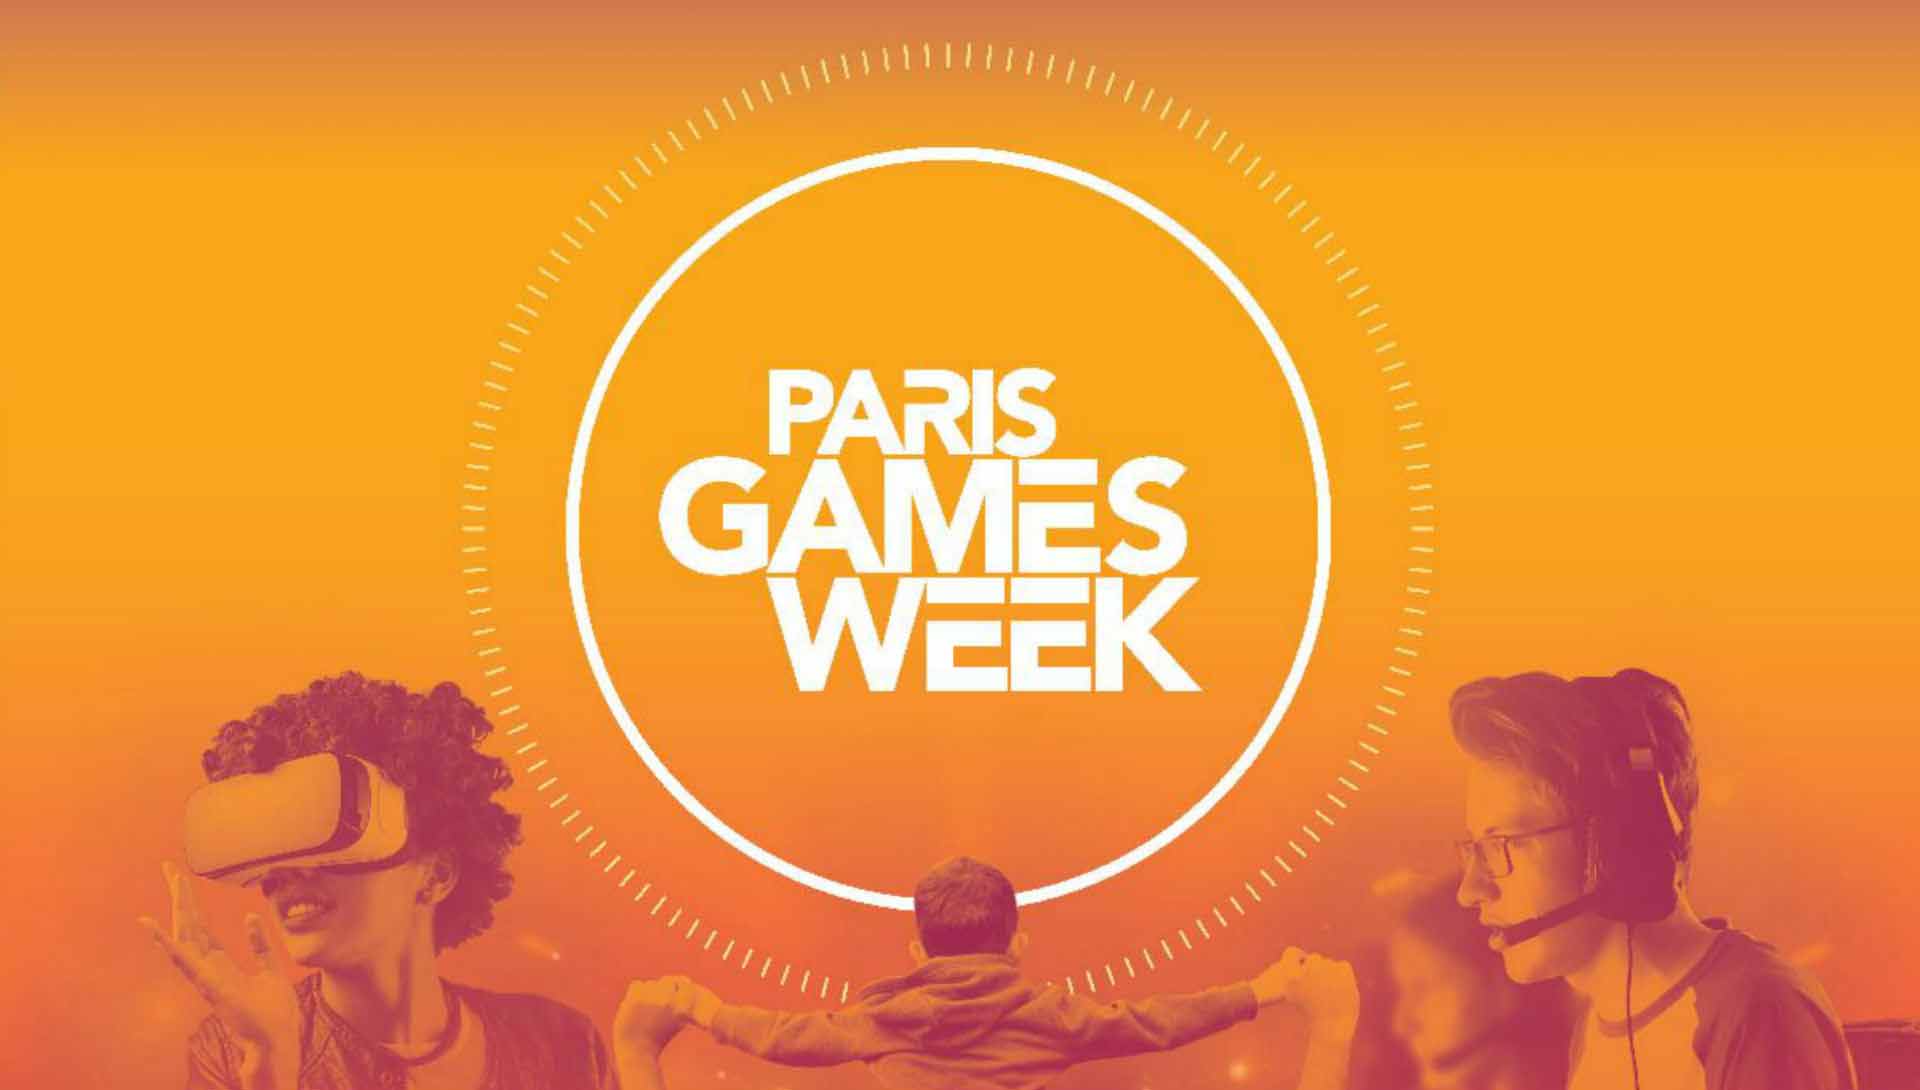 Paris Games Week 2018